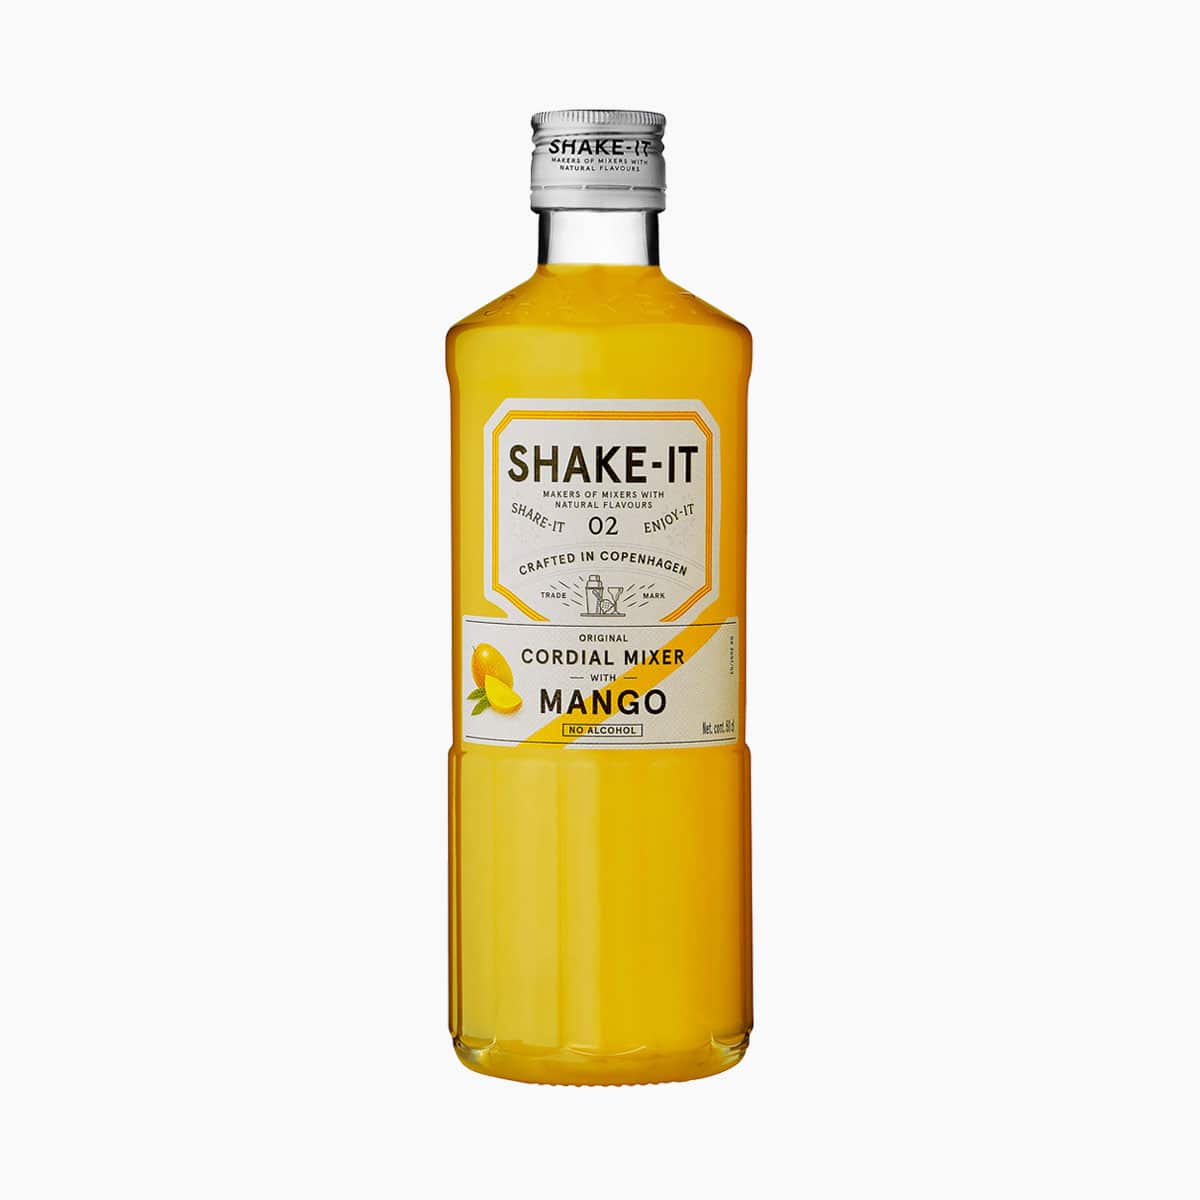 Brug Shake-It Mixer Mango til en forbedret oplevelse